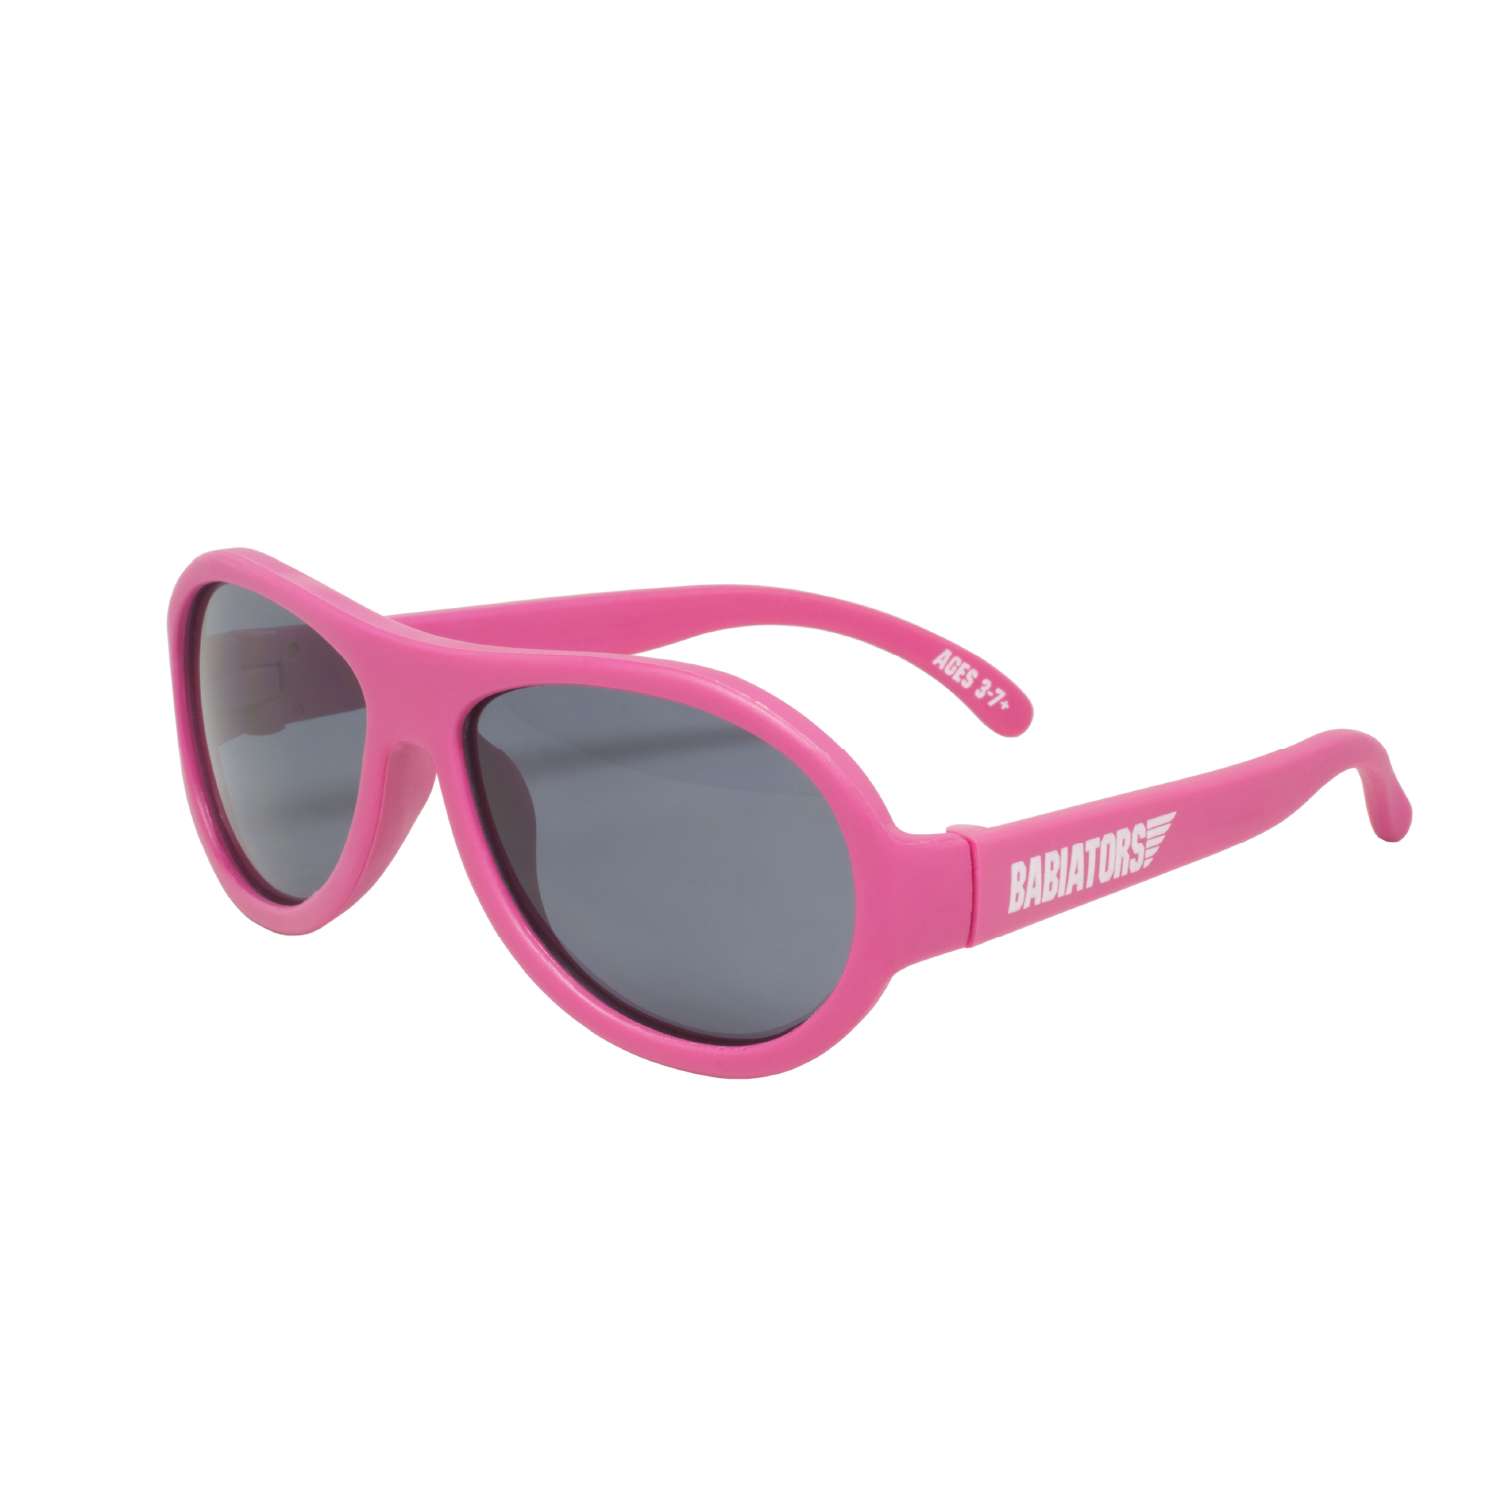 Солнцезащитные очки Babiators Aviator Попсовый розовый 0-2 BAB-043 - фото 1